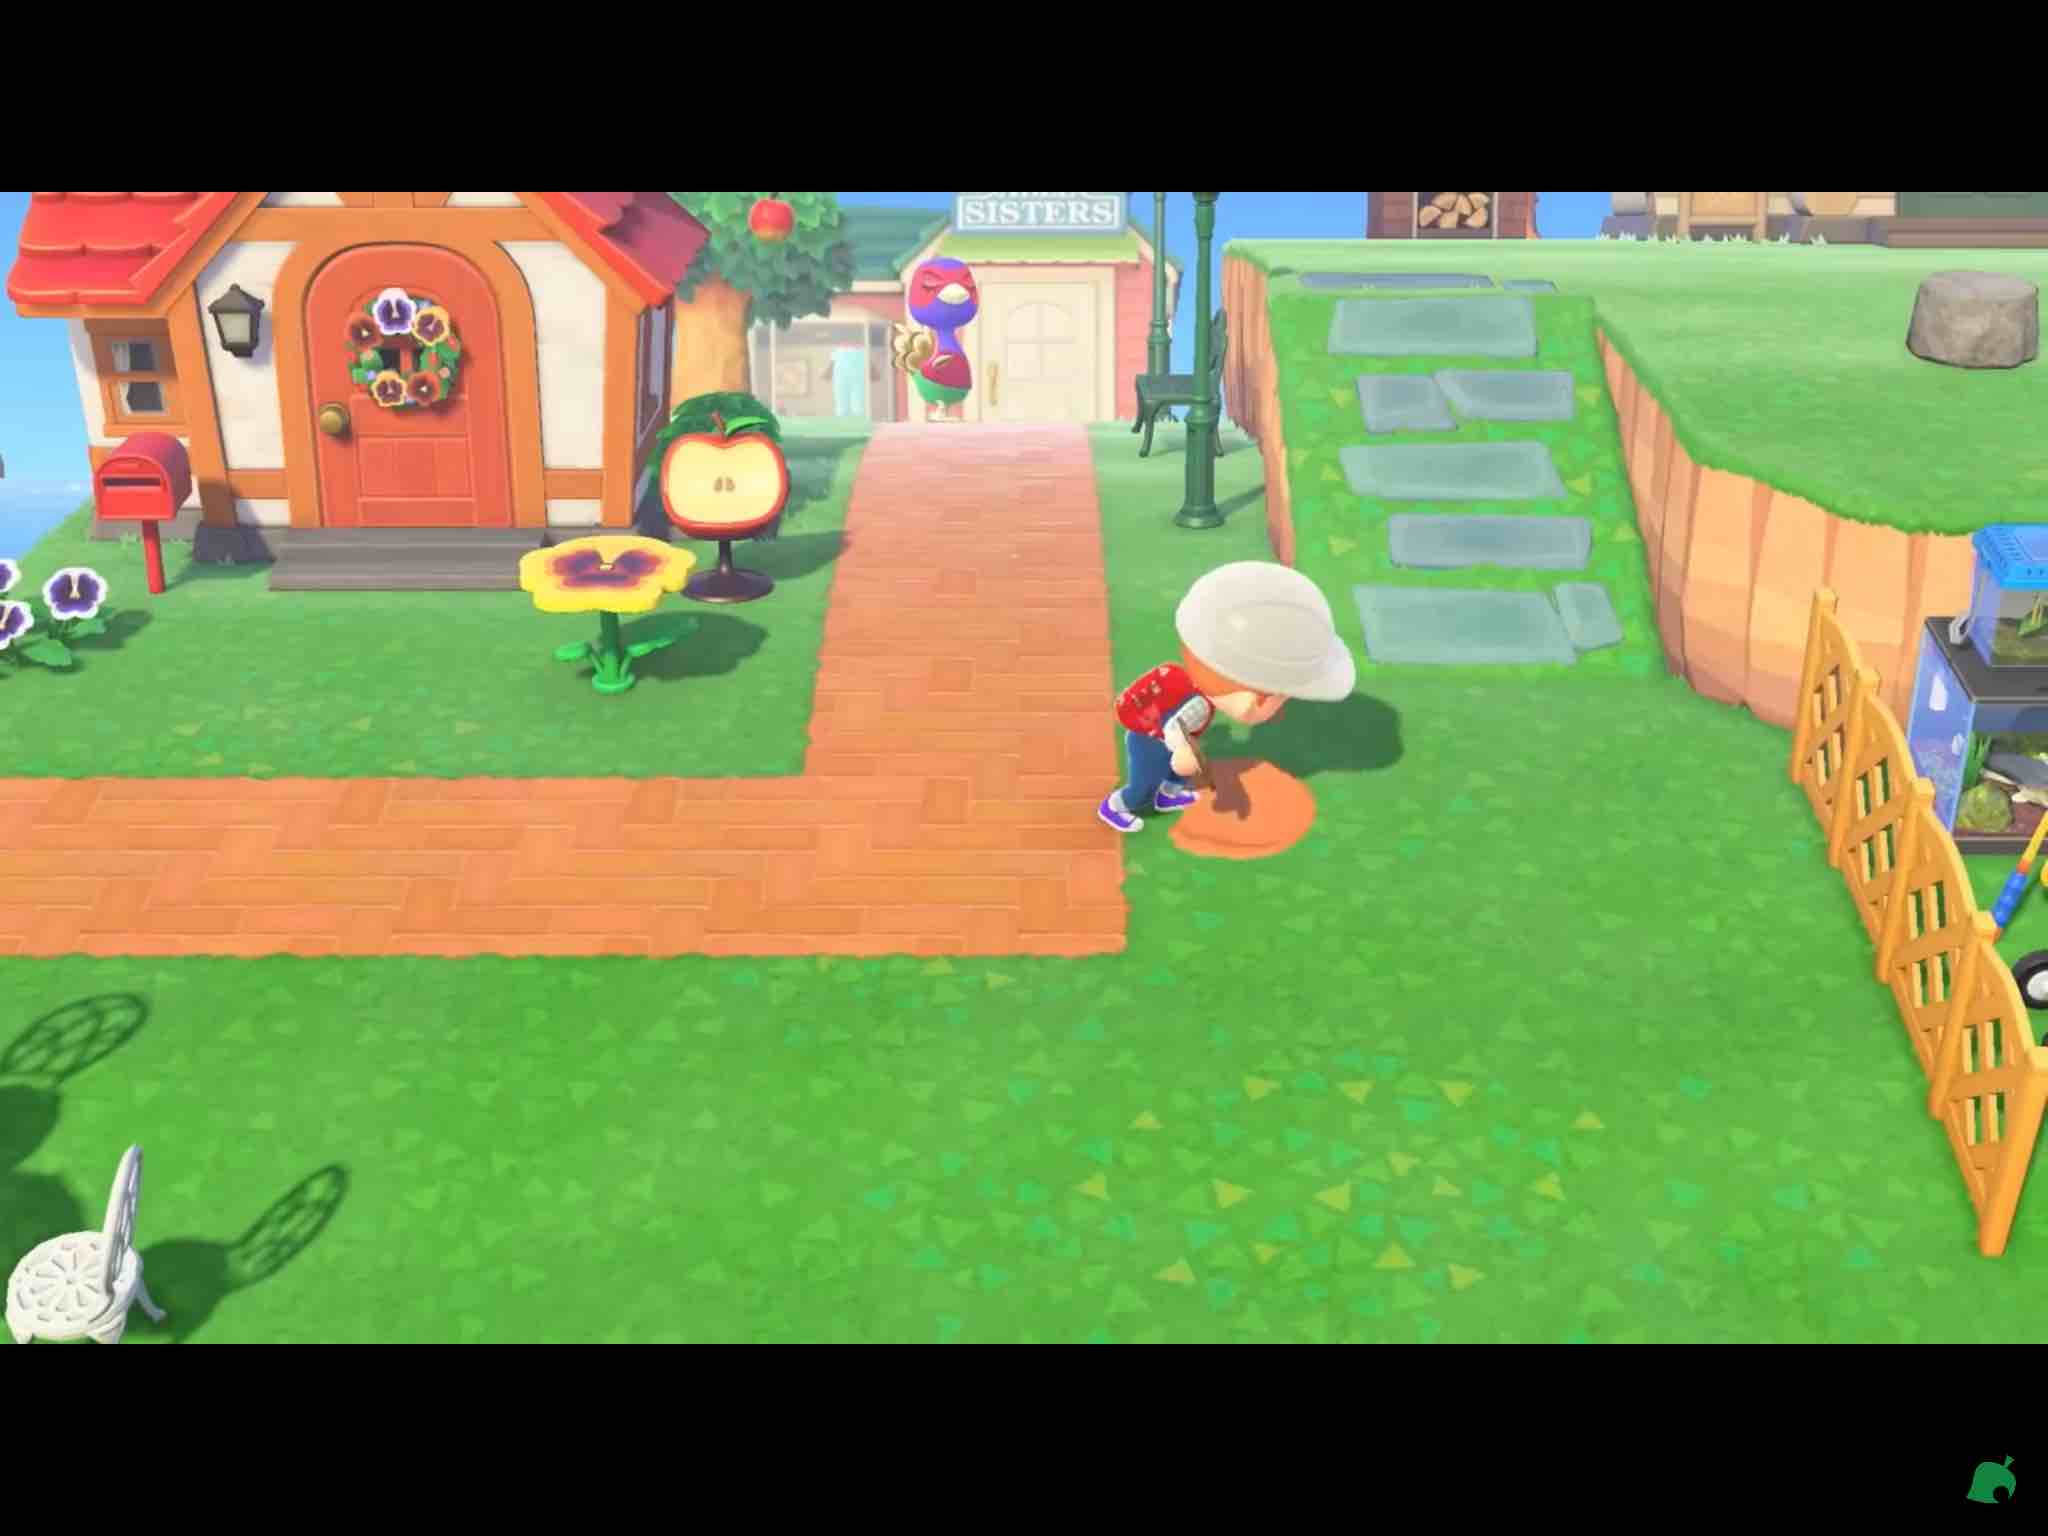 Análisis: Animal Crossing: New Horizons es un juego perfecto para la  cuarentena